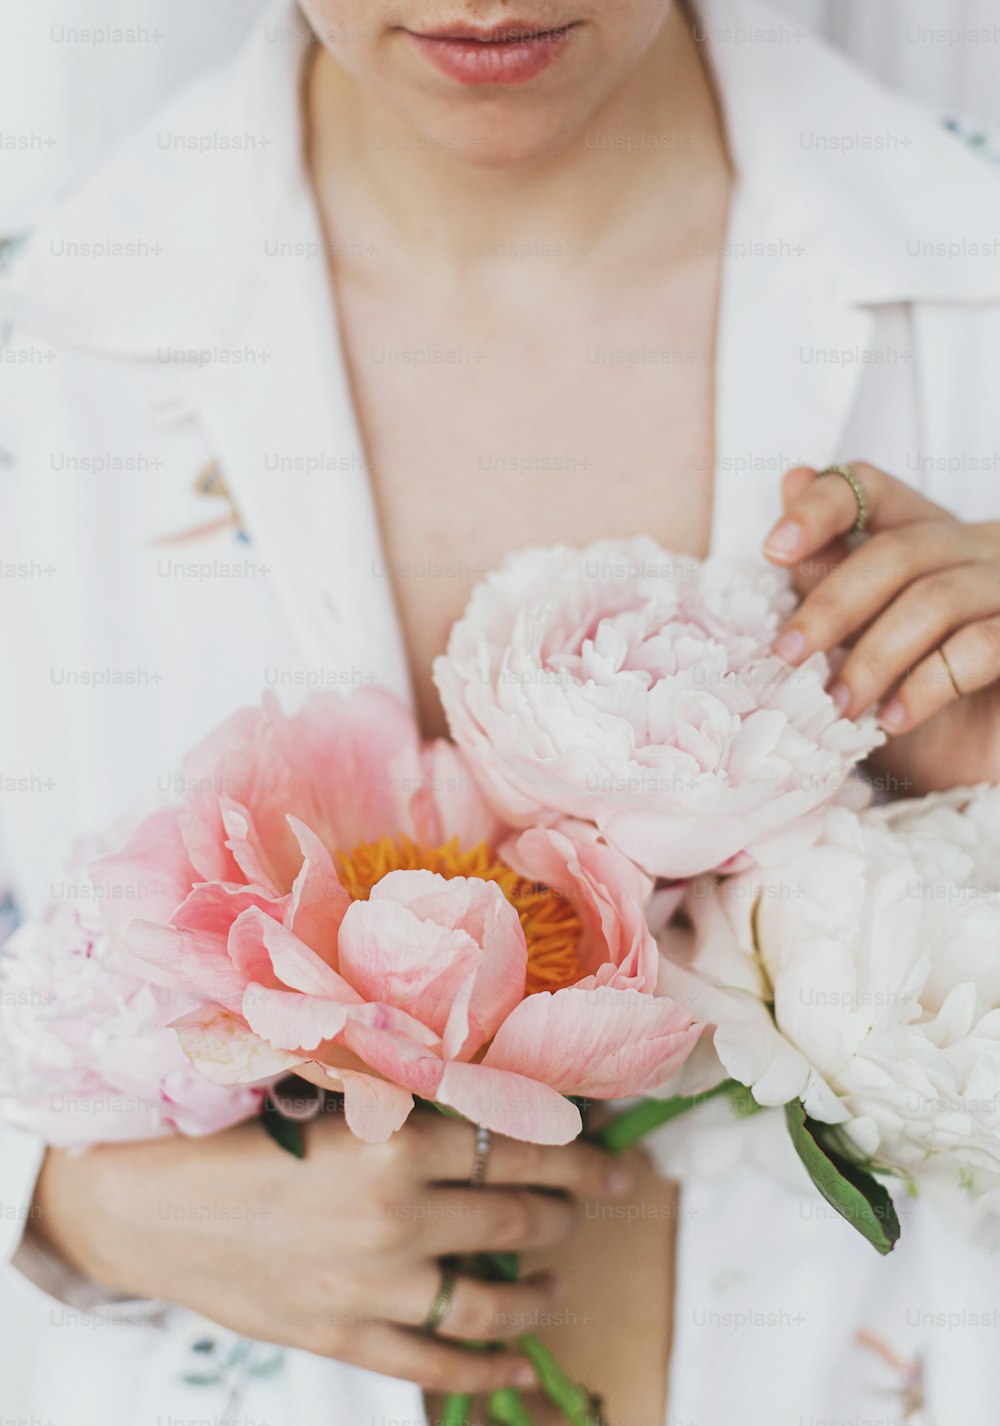 牡丹の花束を持っている美しいスタイリッシュな女性。自由奔放に生きる花柄のシャツを着た若い女性が、ピンクと白の牡丹の花を手に優しく持っています。官能的な柔らかなイメージ。春の美学